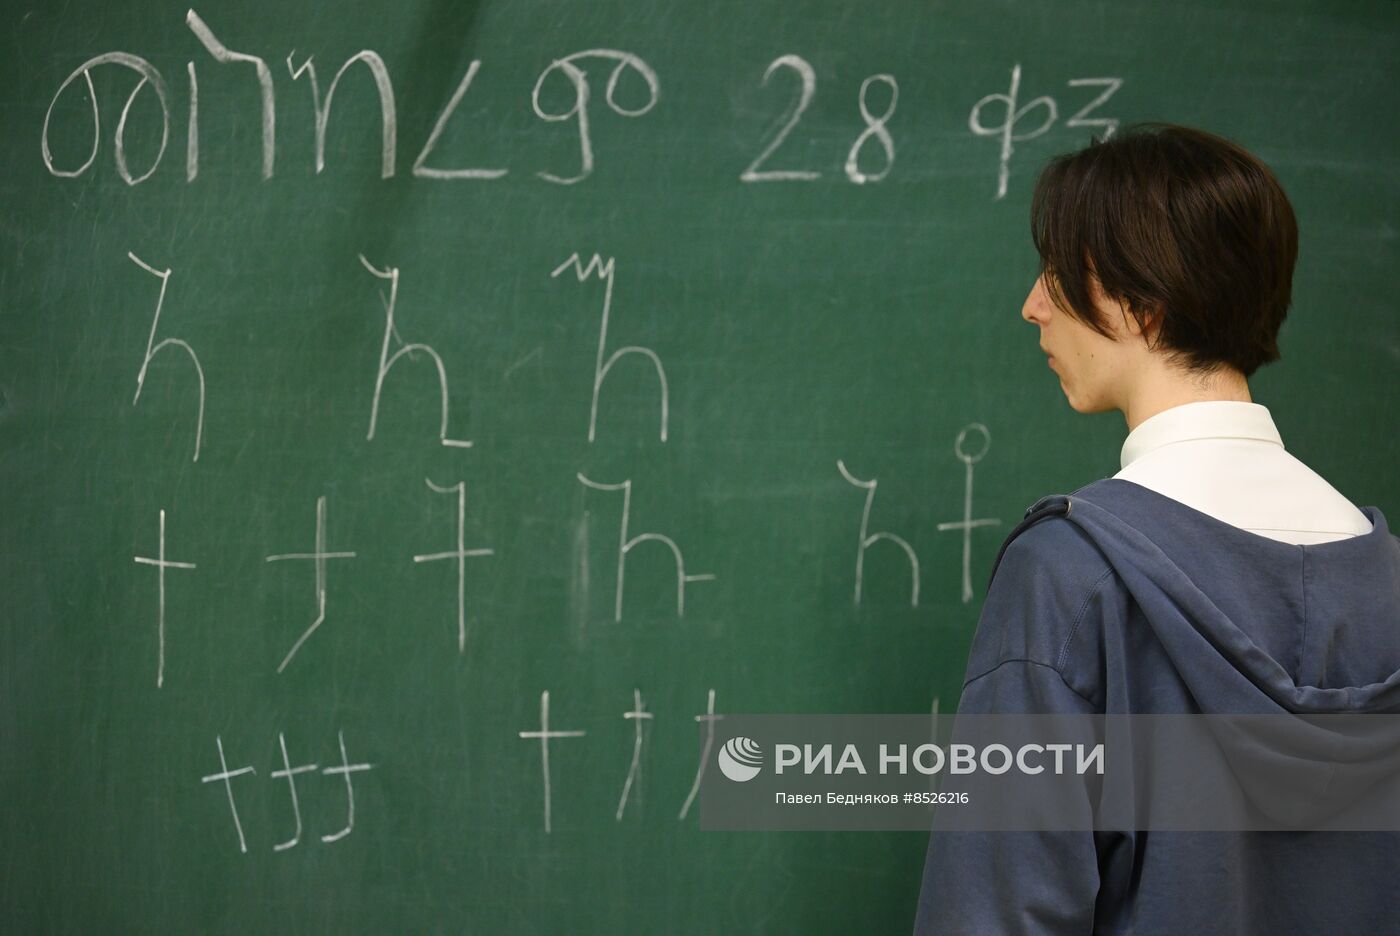 В московской школе стартовало изучение амхарского языка